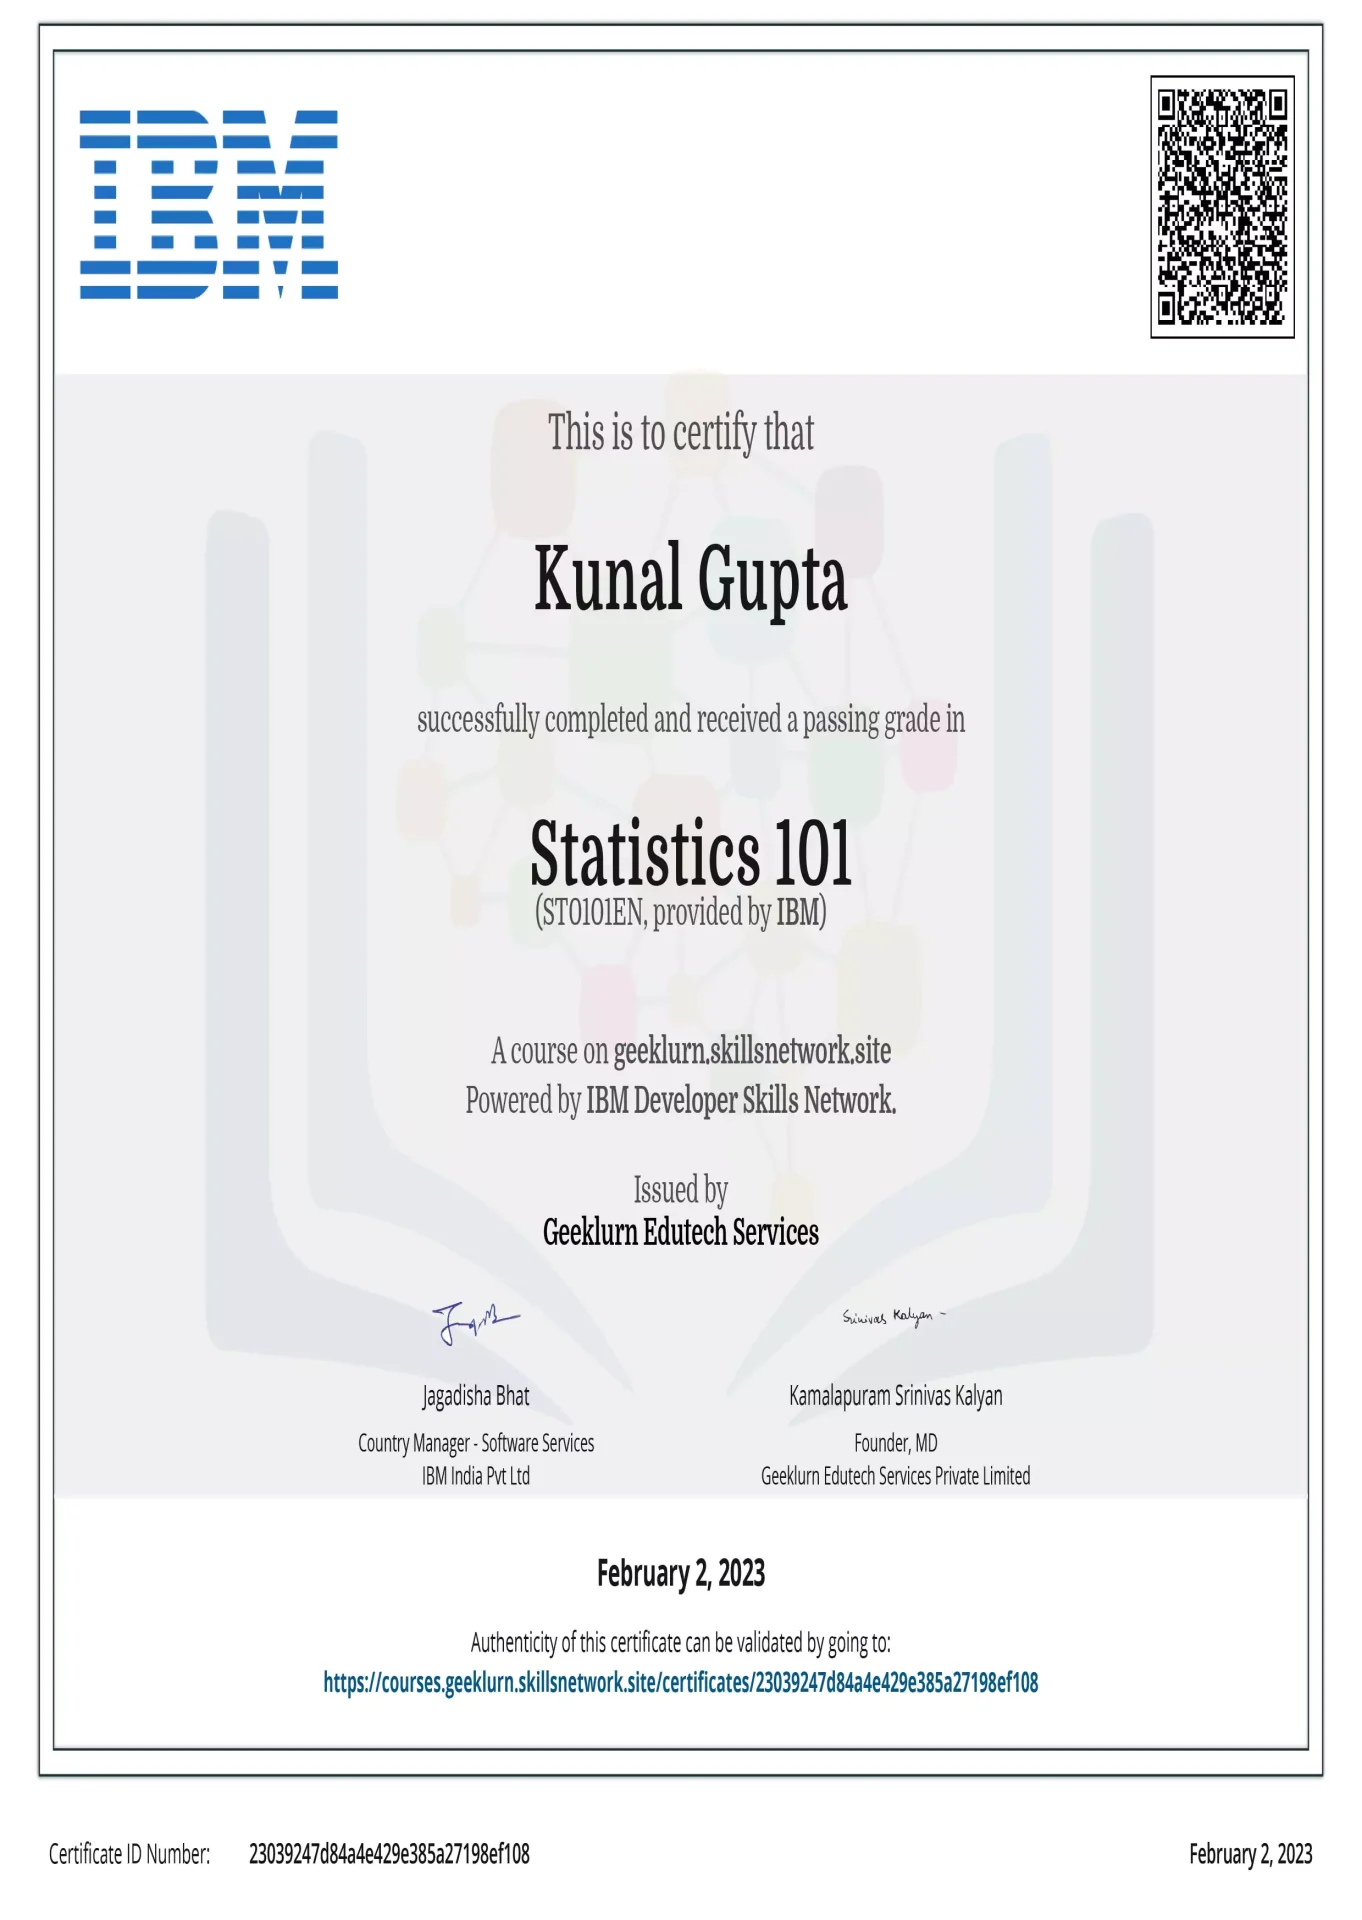 ibm-st0101en-certificate-geeklurn-edutech-services-4